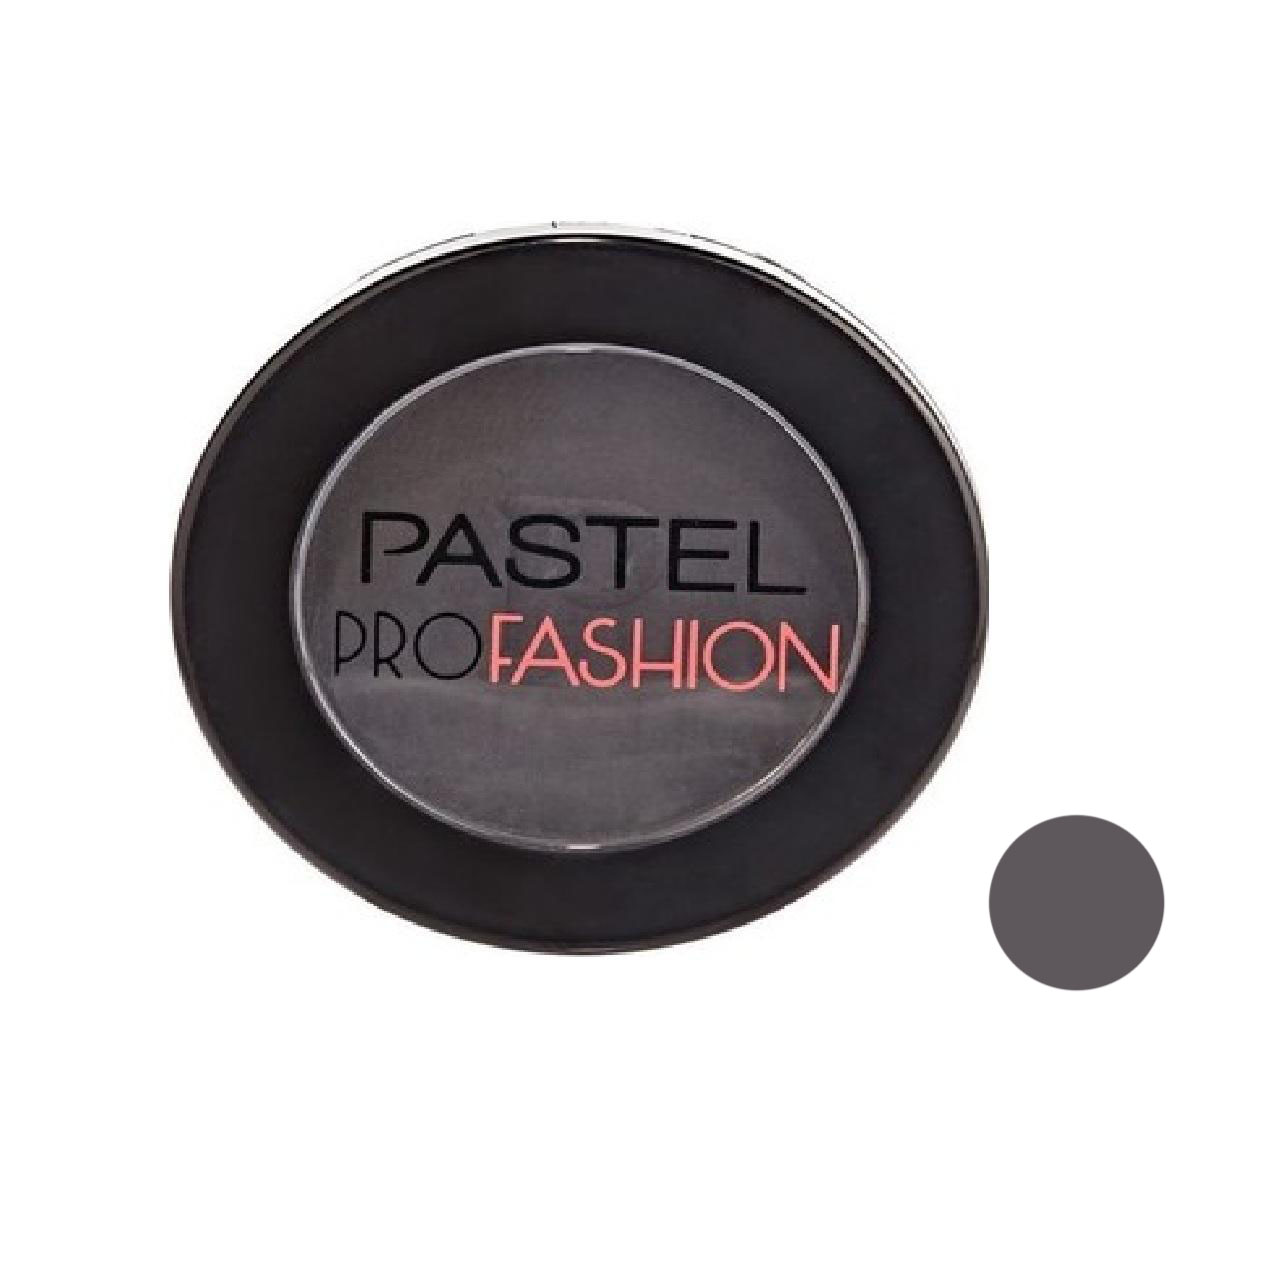 سایه چشم پاستل مدل pro fashion شماره 11